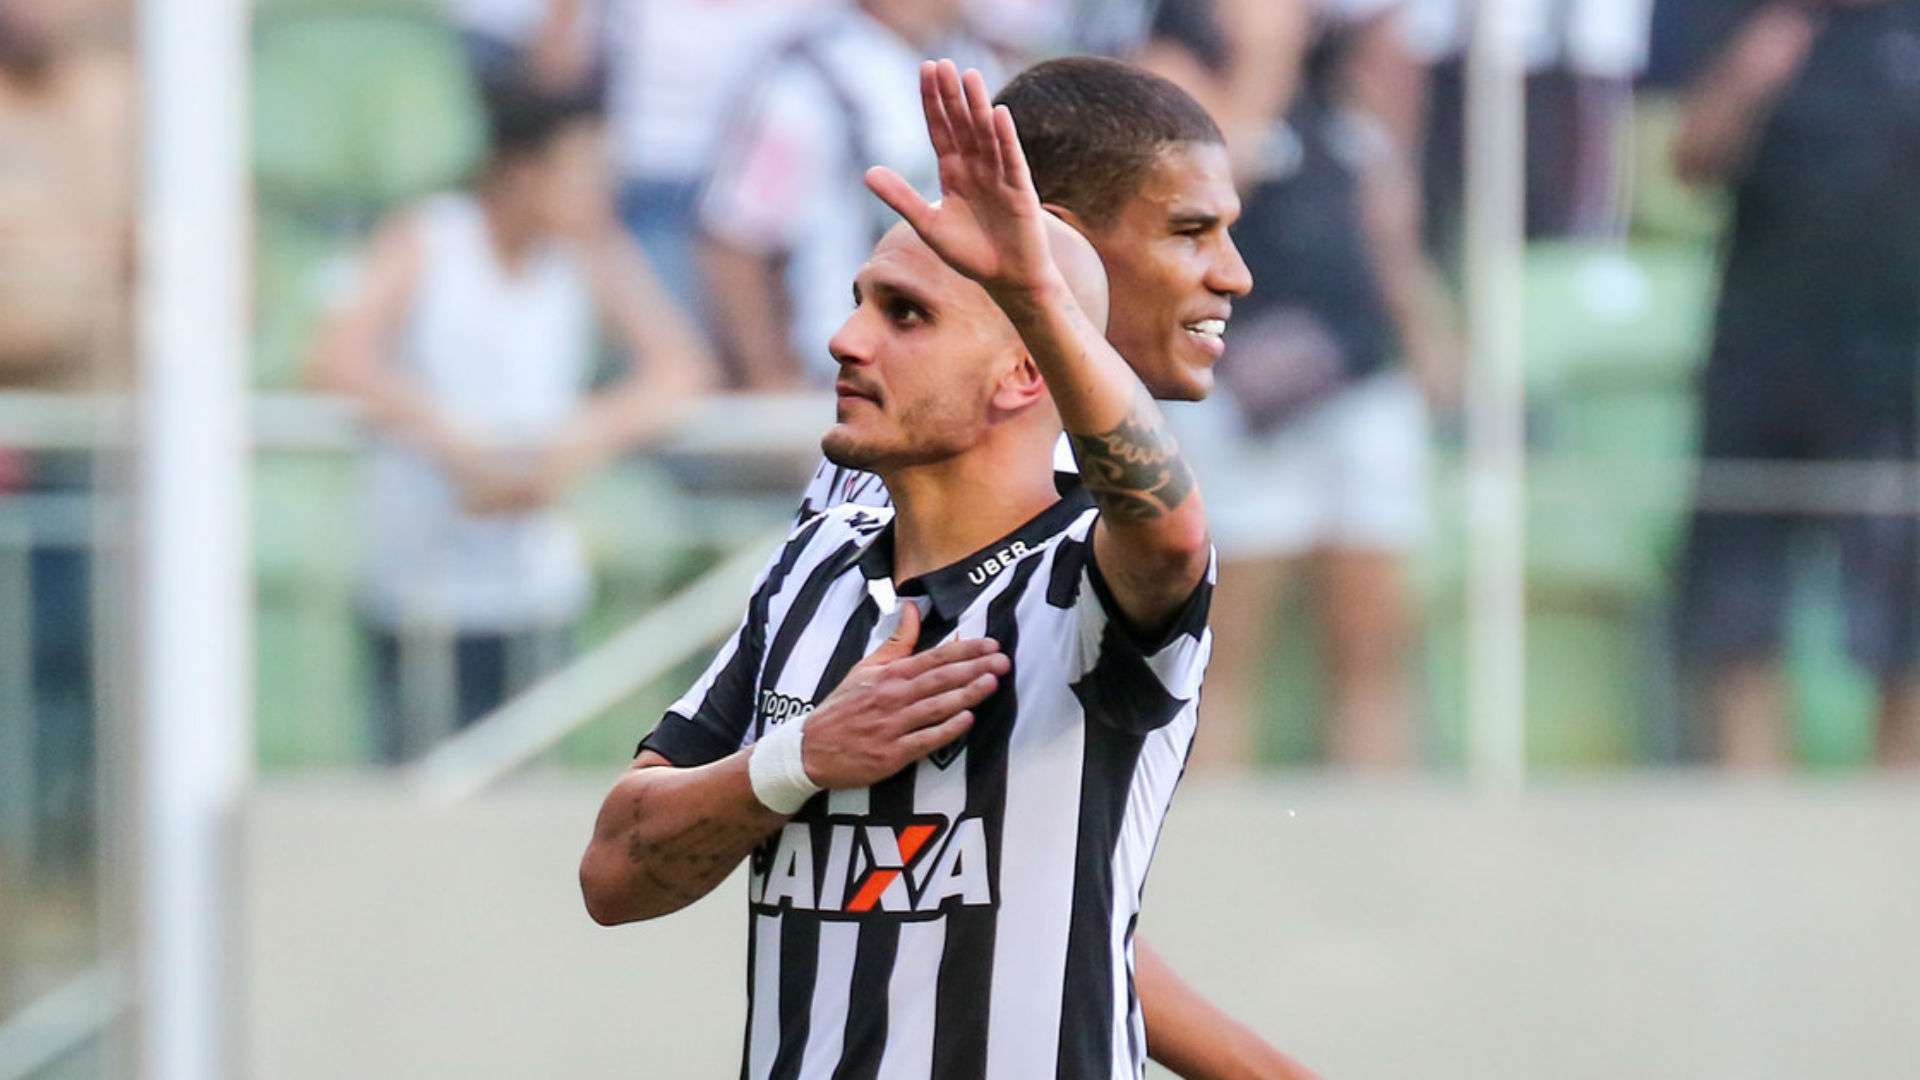 Fábio Santos Atlético URT Mineiro 18 03 2018